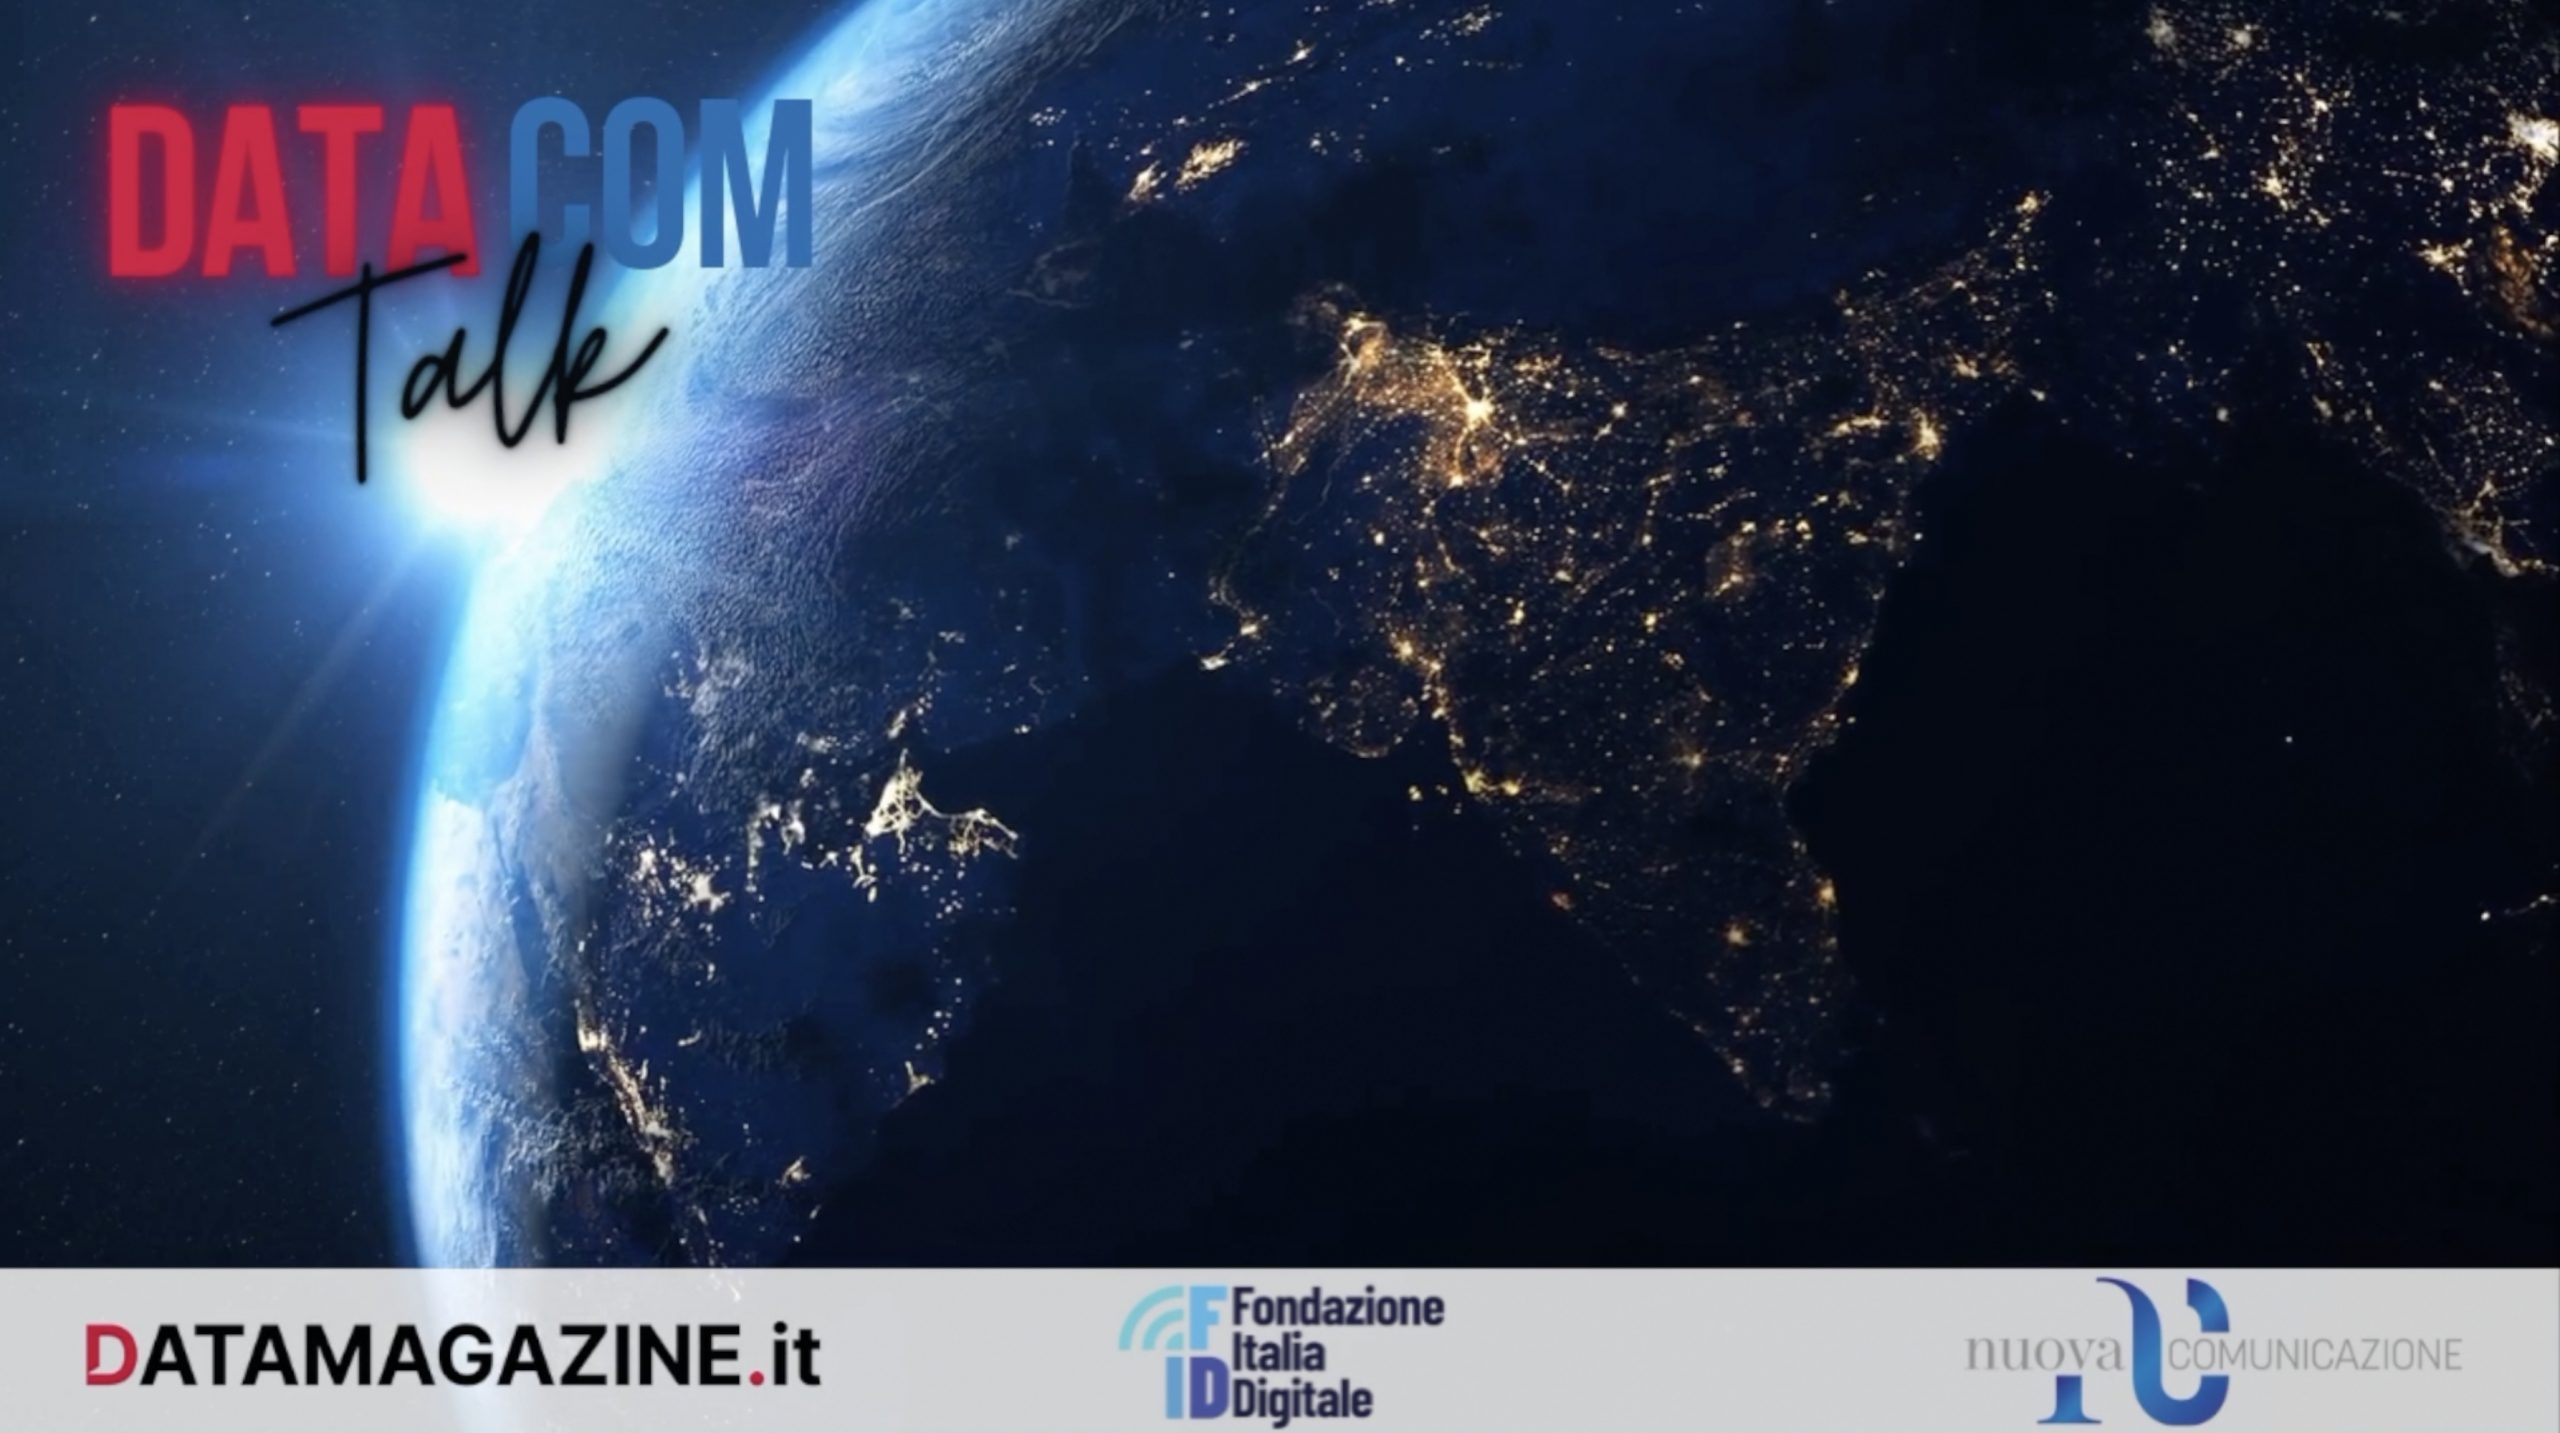 DataCom Talk – Riflessi nello schermo: il convegno a Roma e l’assemblea di AIART